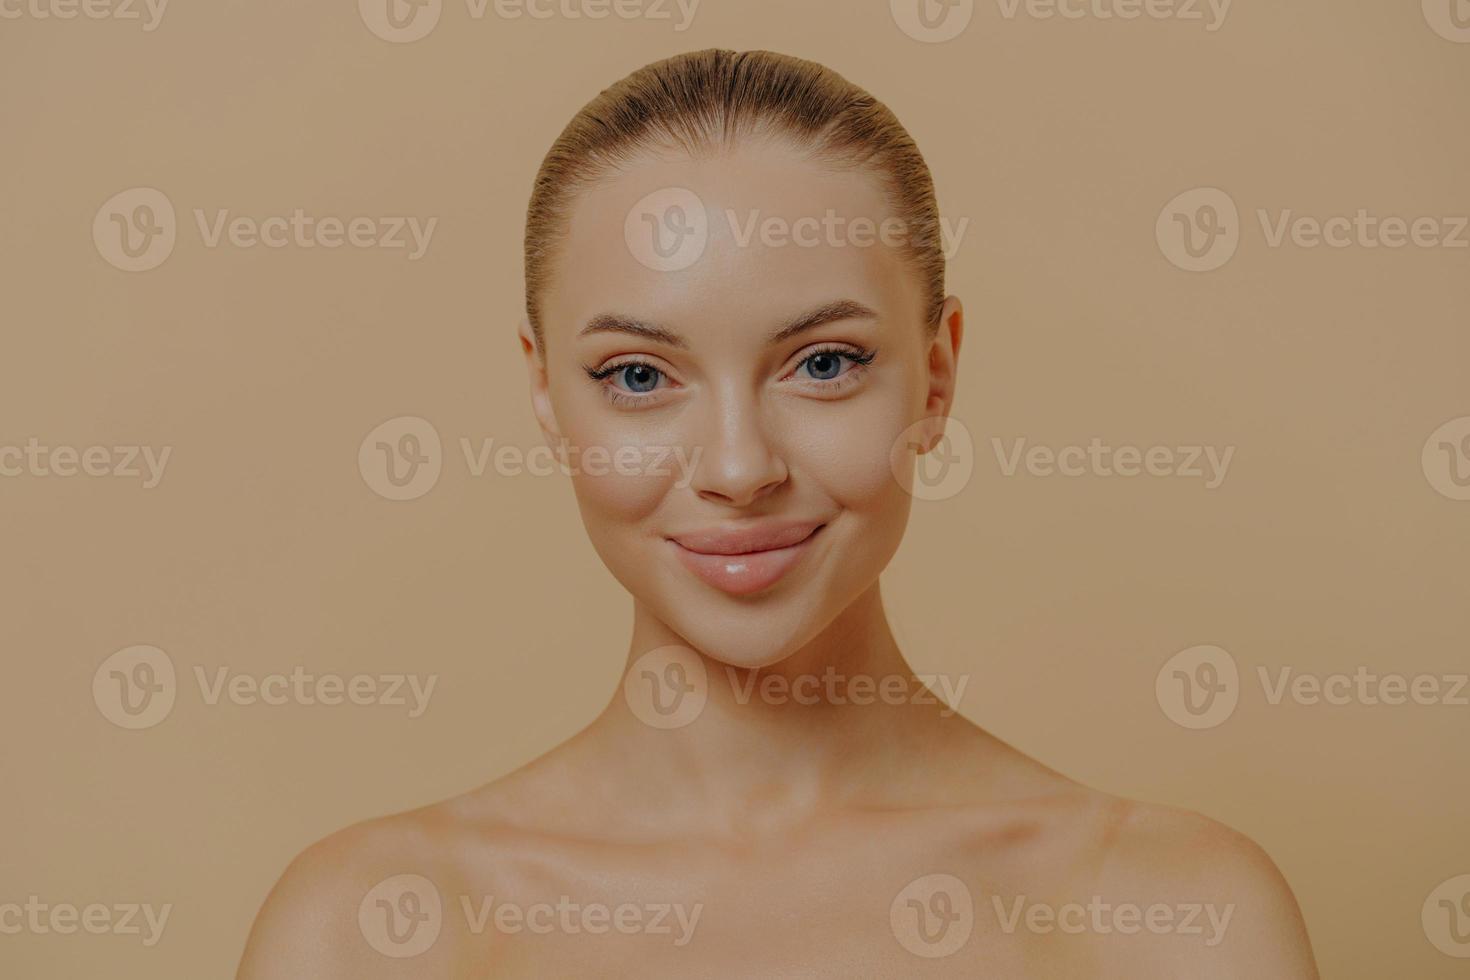 schoonheidsportret van charmante vrouw met een gezonde gloeiende huid die halfnaakt tegen een beige muur staat foto